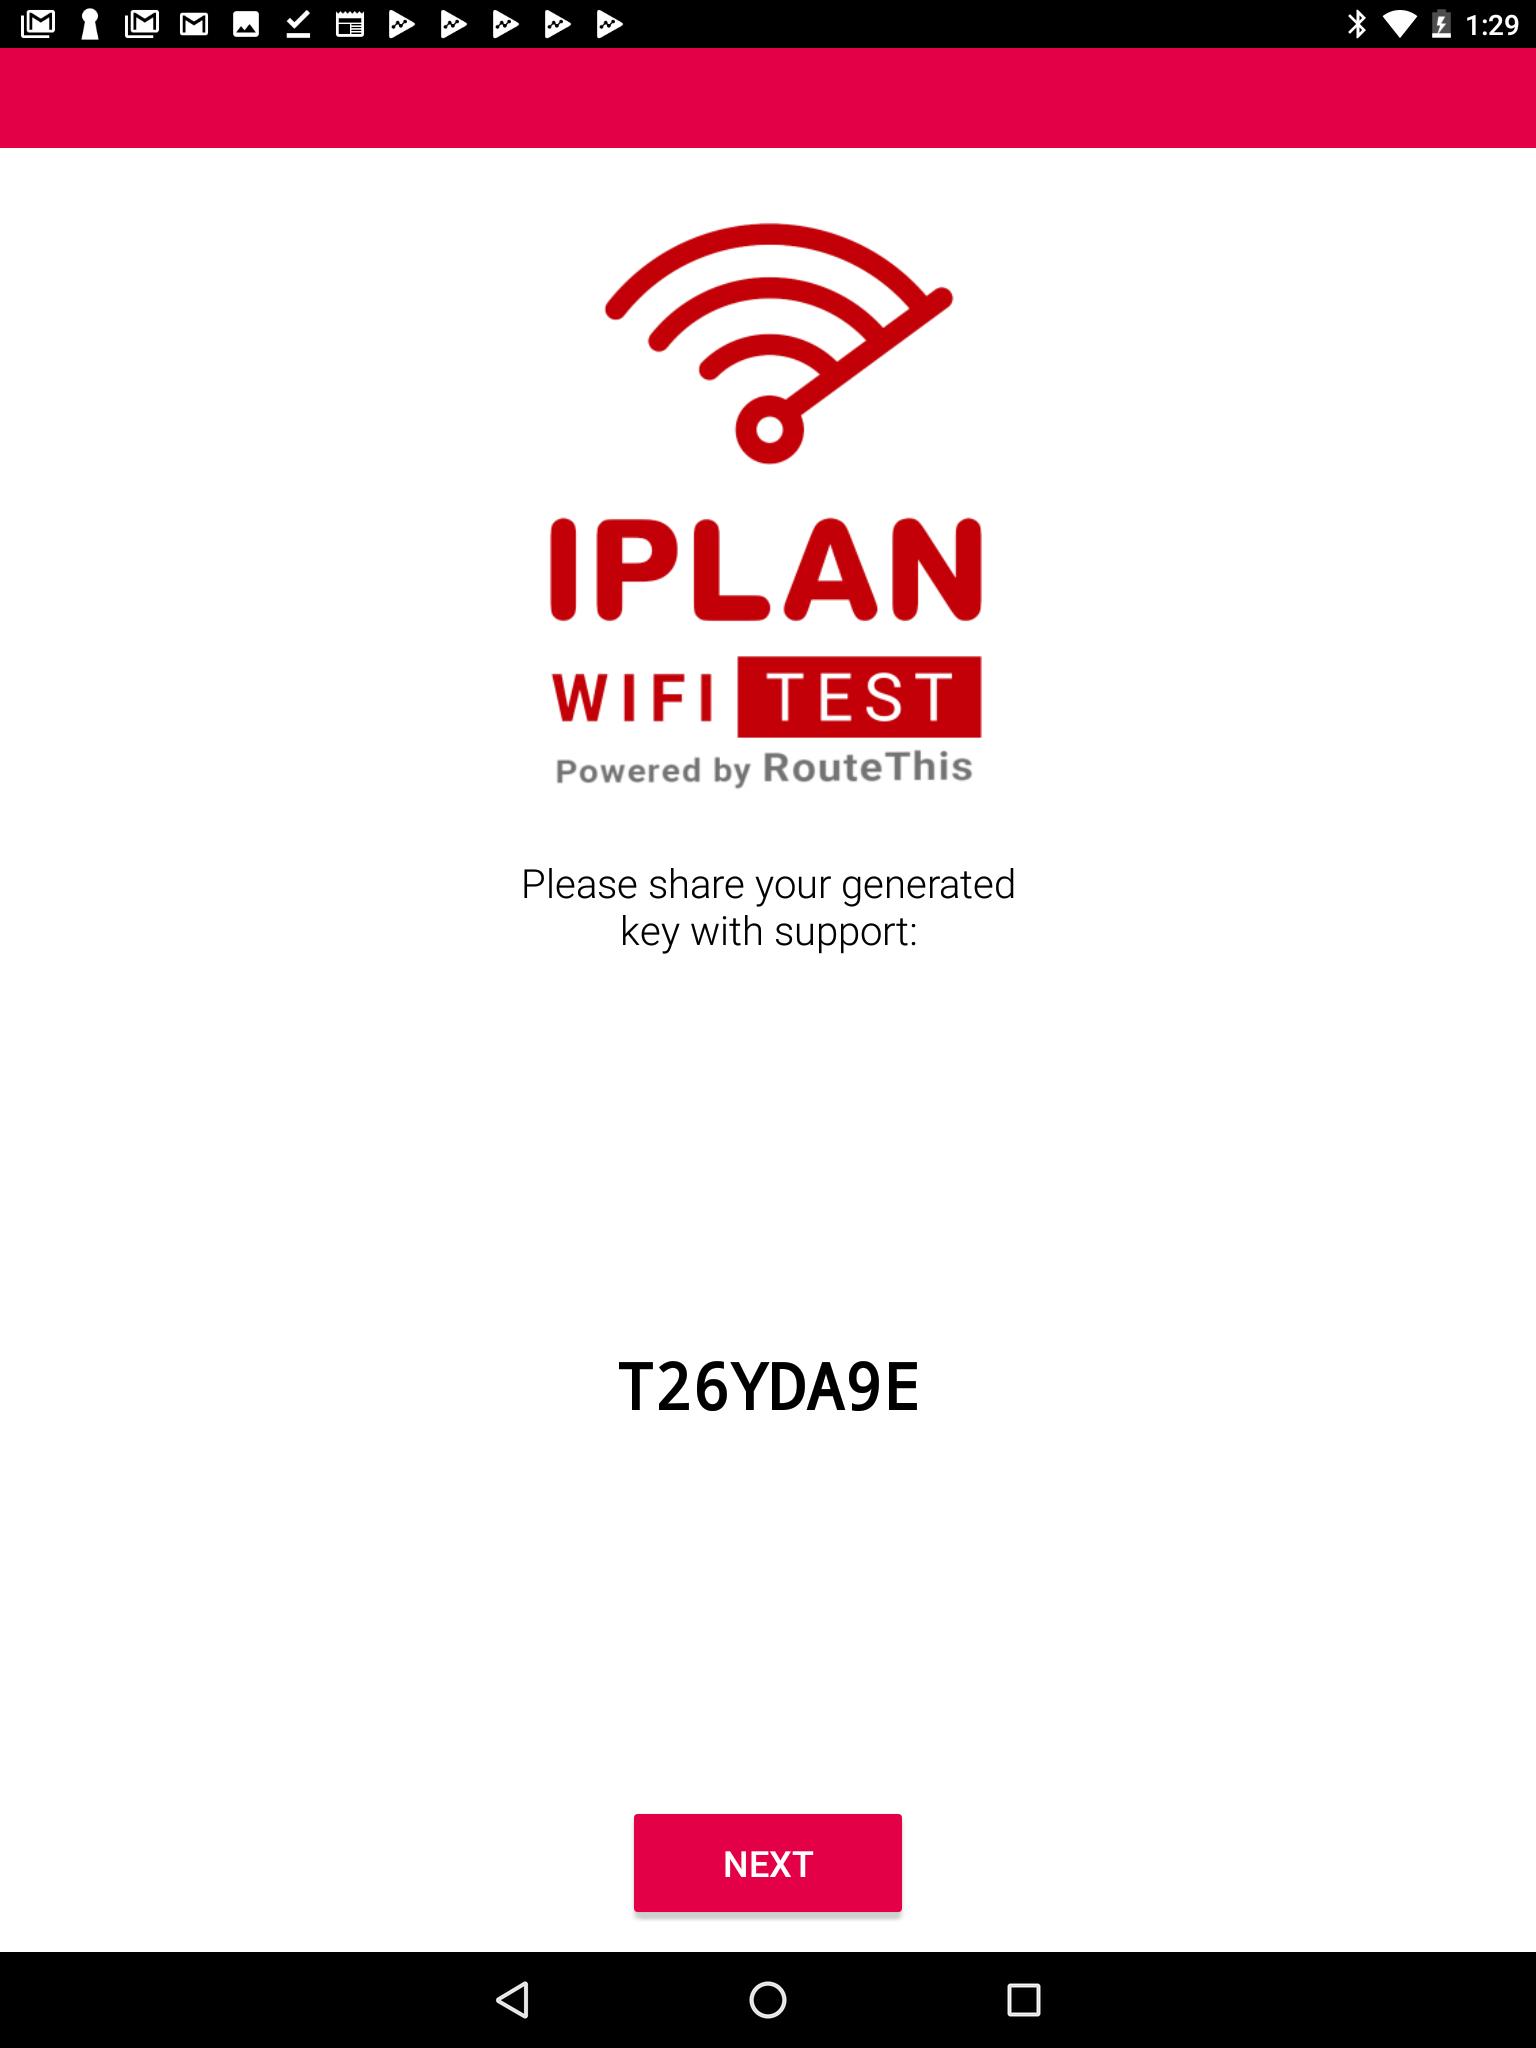 IPLAN WIFI TEST 1.21.03.31 Screenshot 6